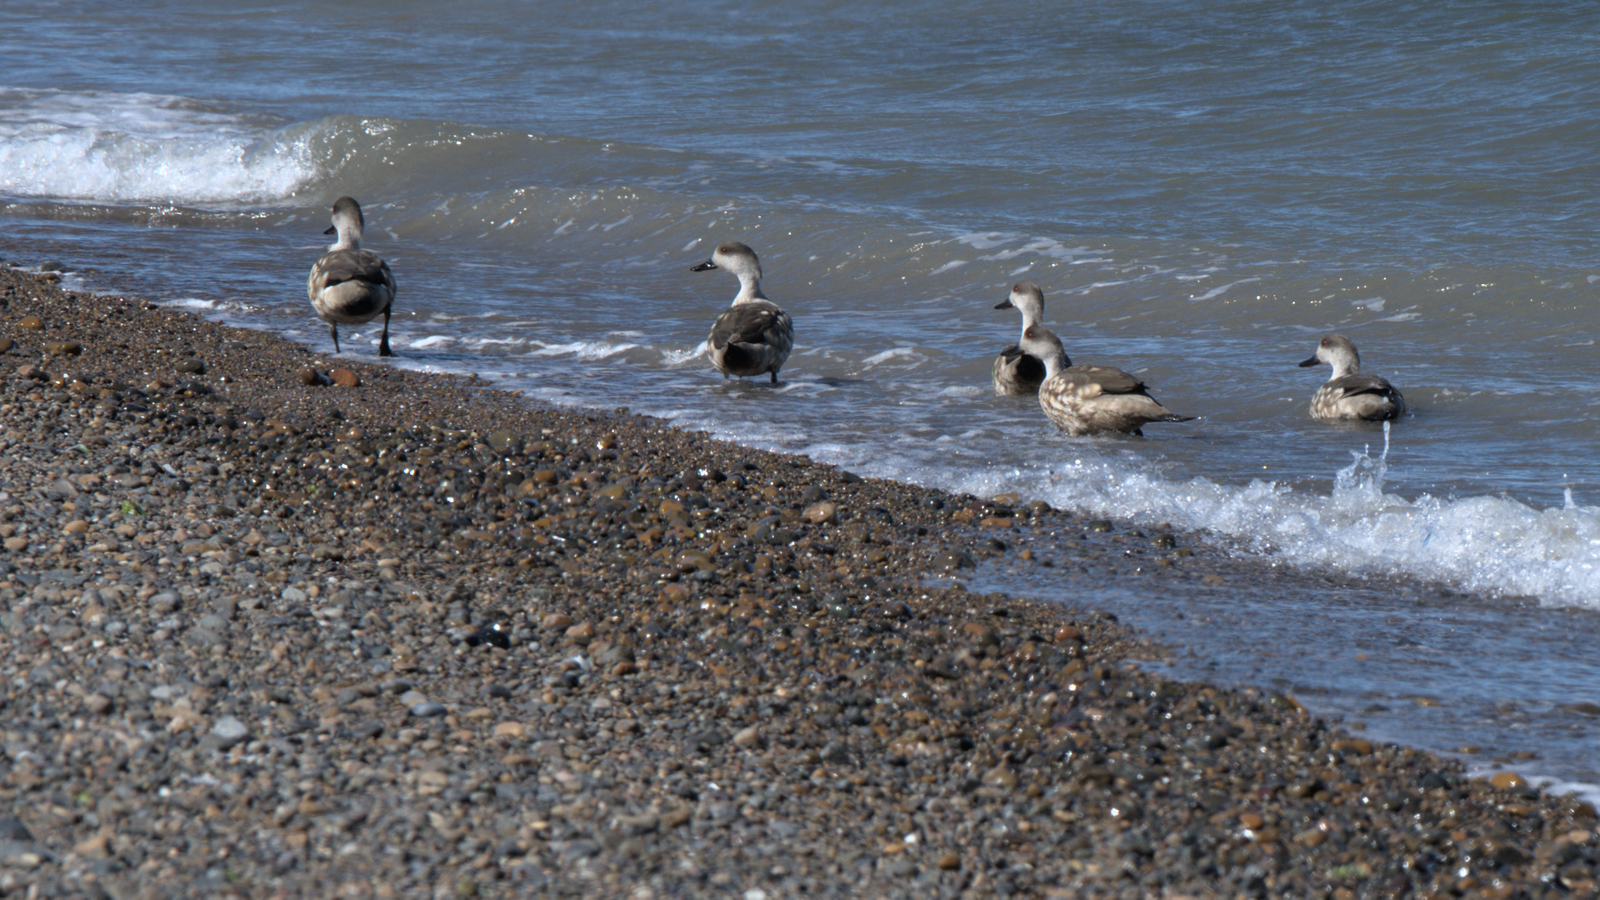 Ducks on the beach